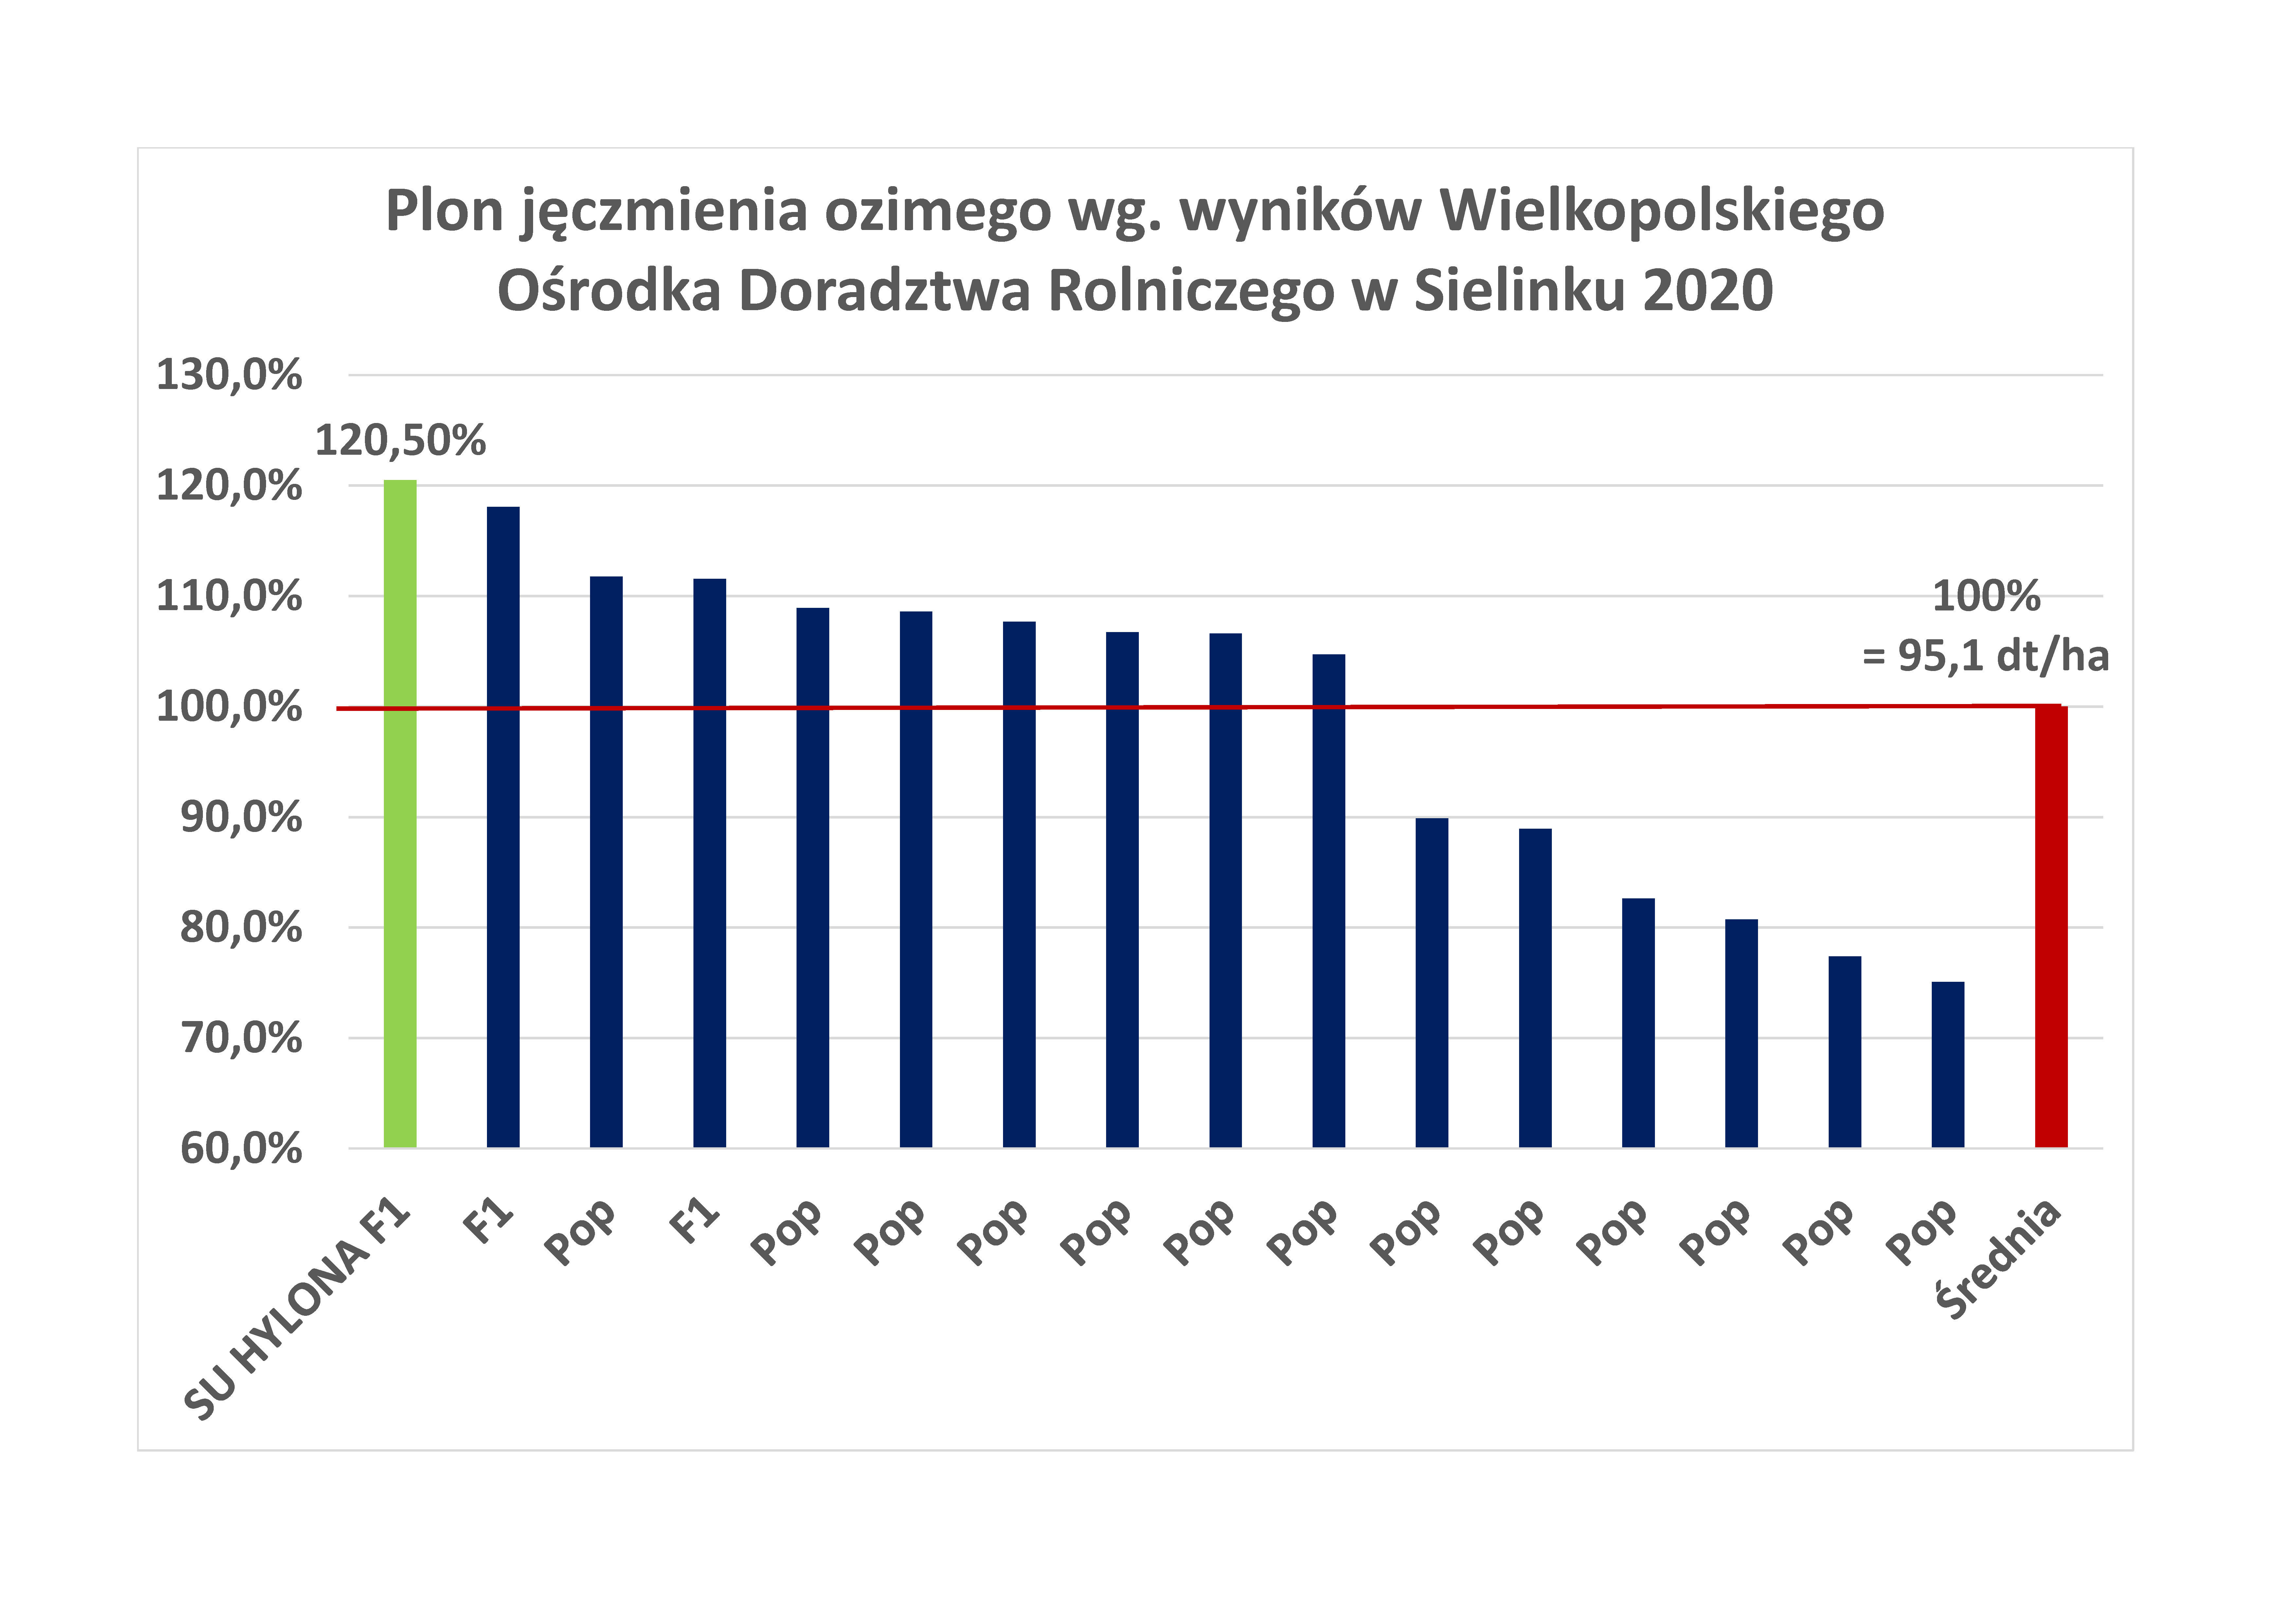 Plon jęczmienia ozimego hybrydowego wg wyników Wielkopolskiego Ośrodka Doradztwa Rolniczego w Sielinku, 2020